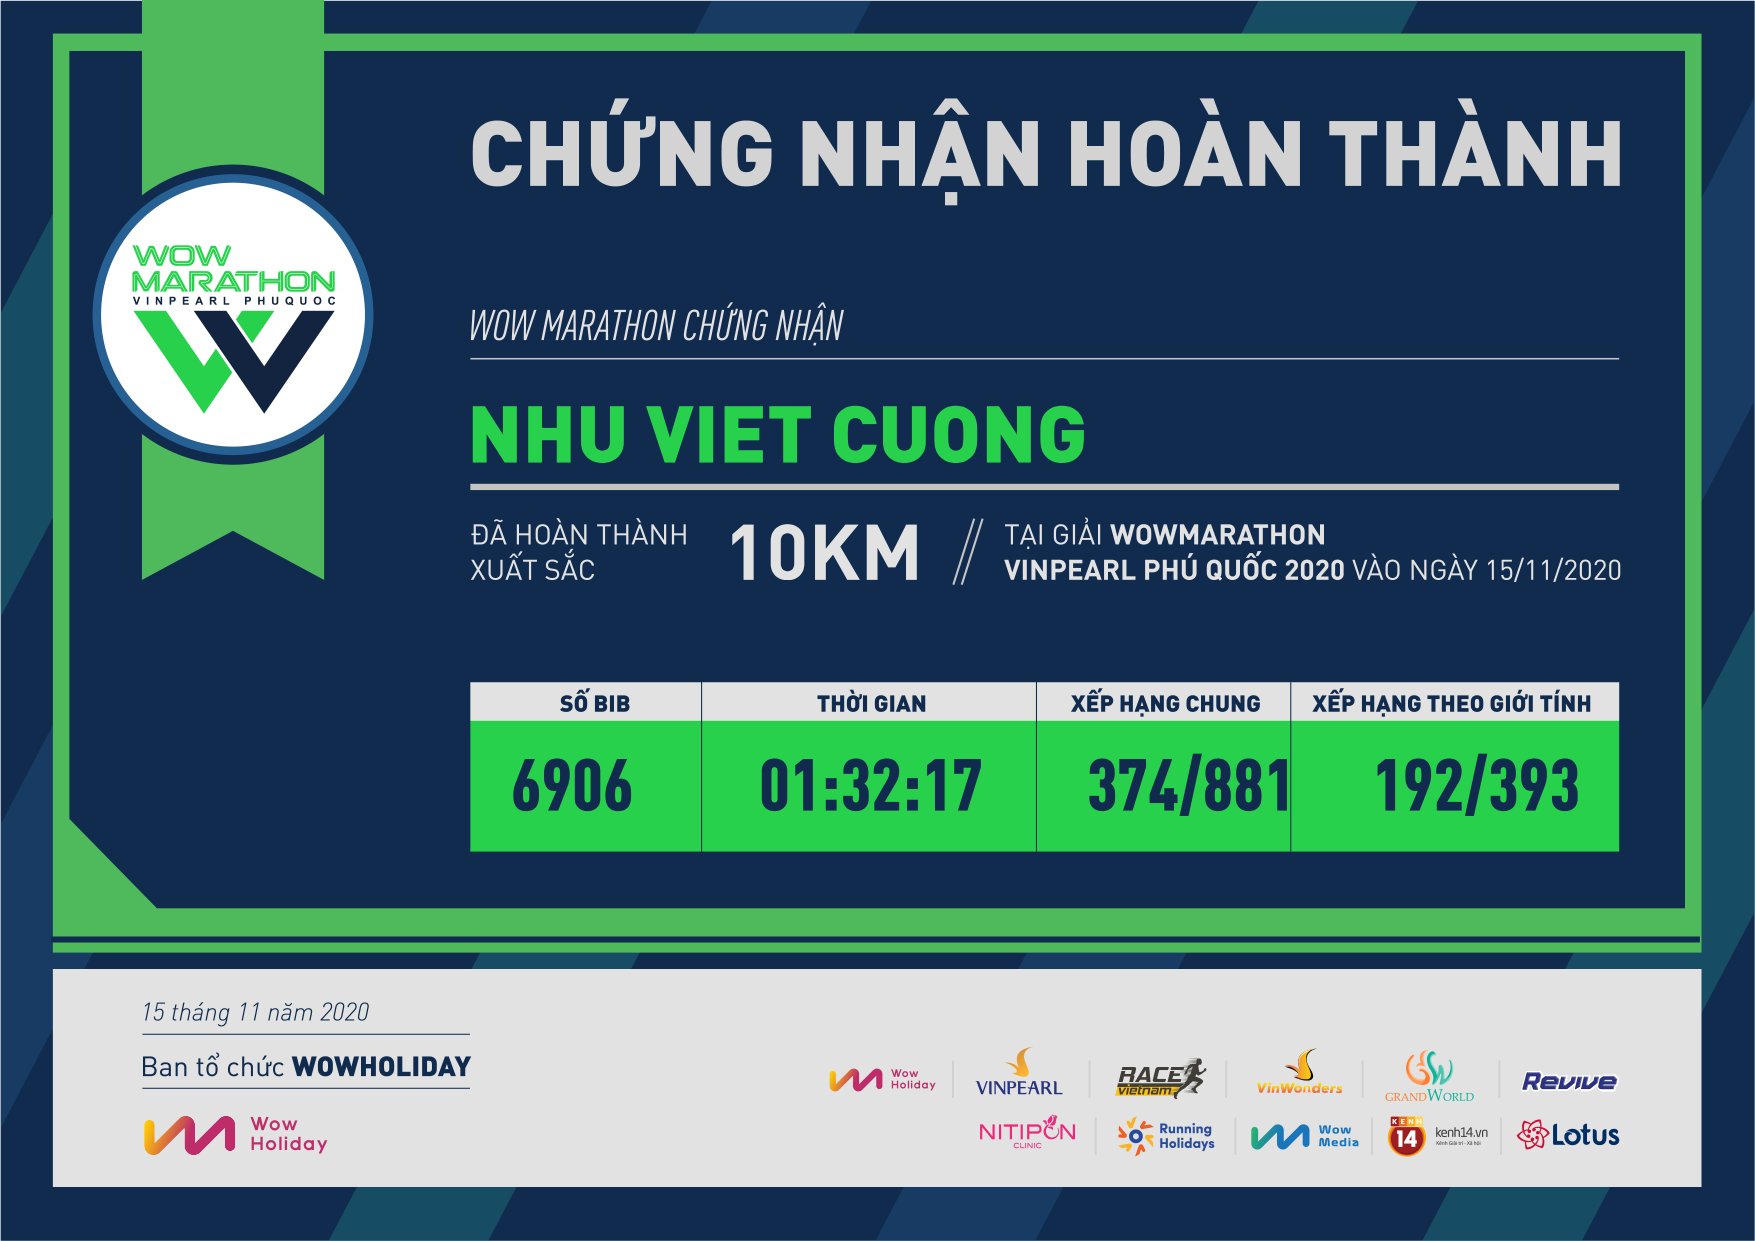 6906 - Nhu Viet Cuong